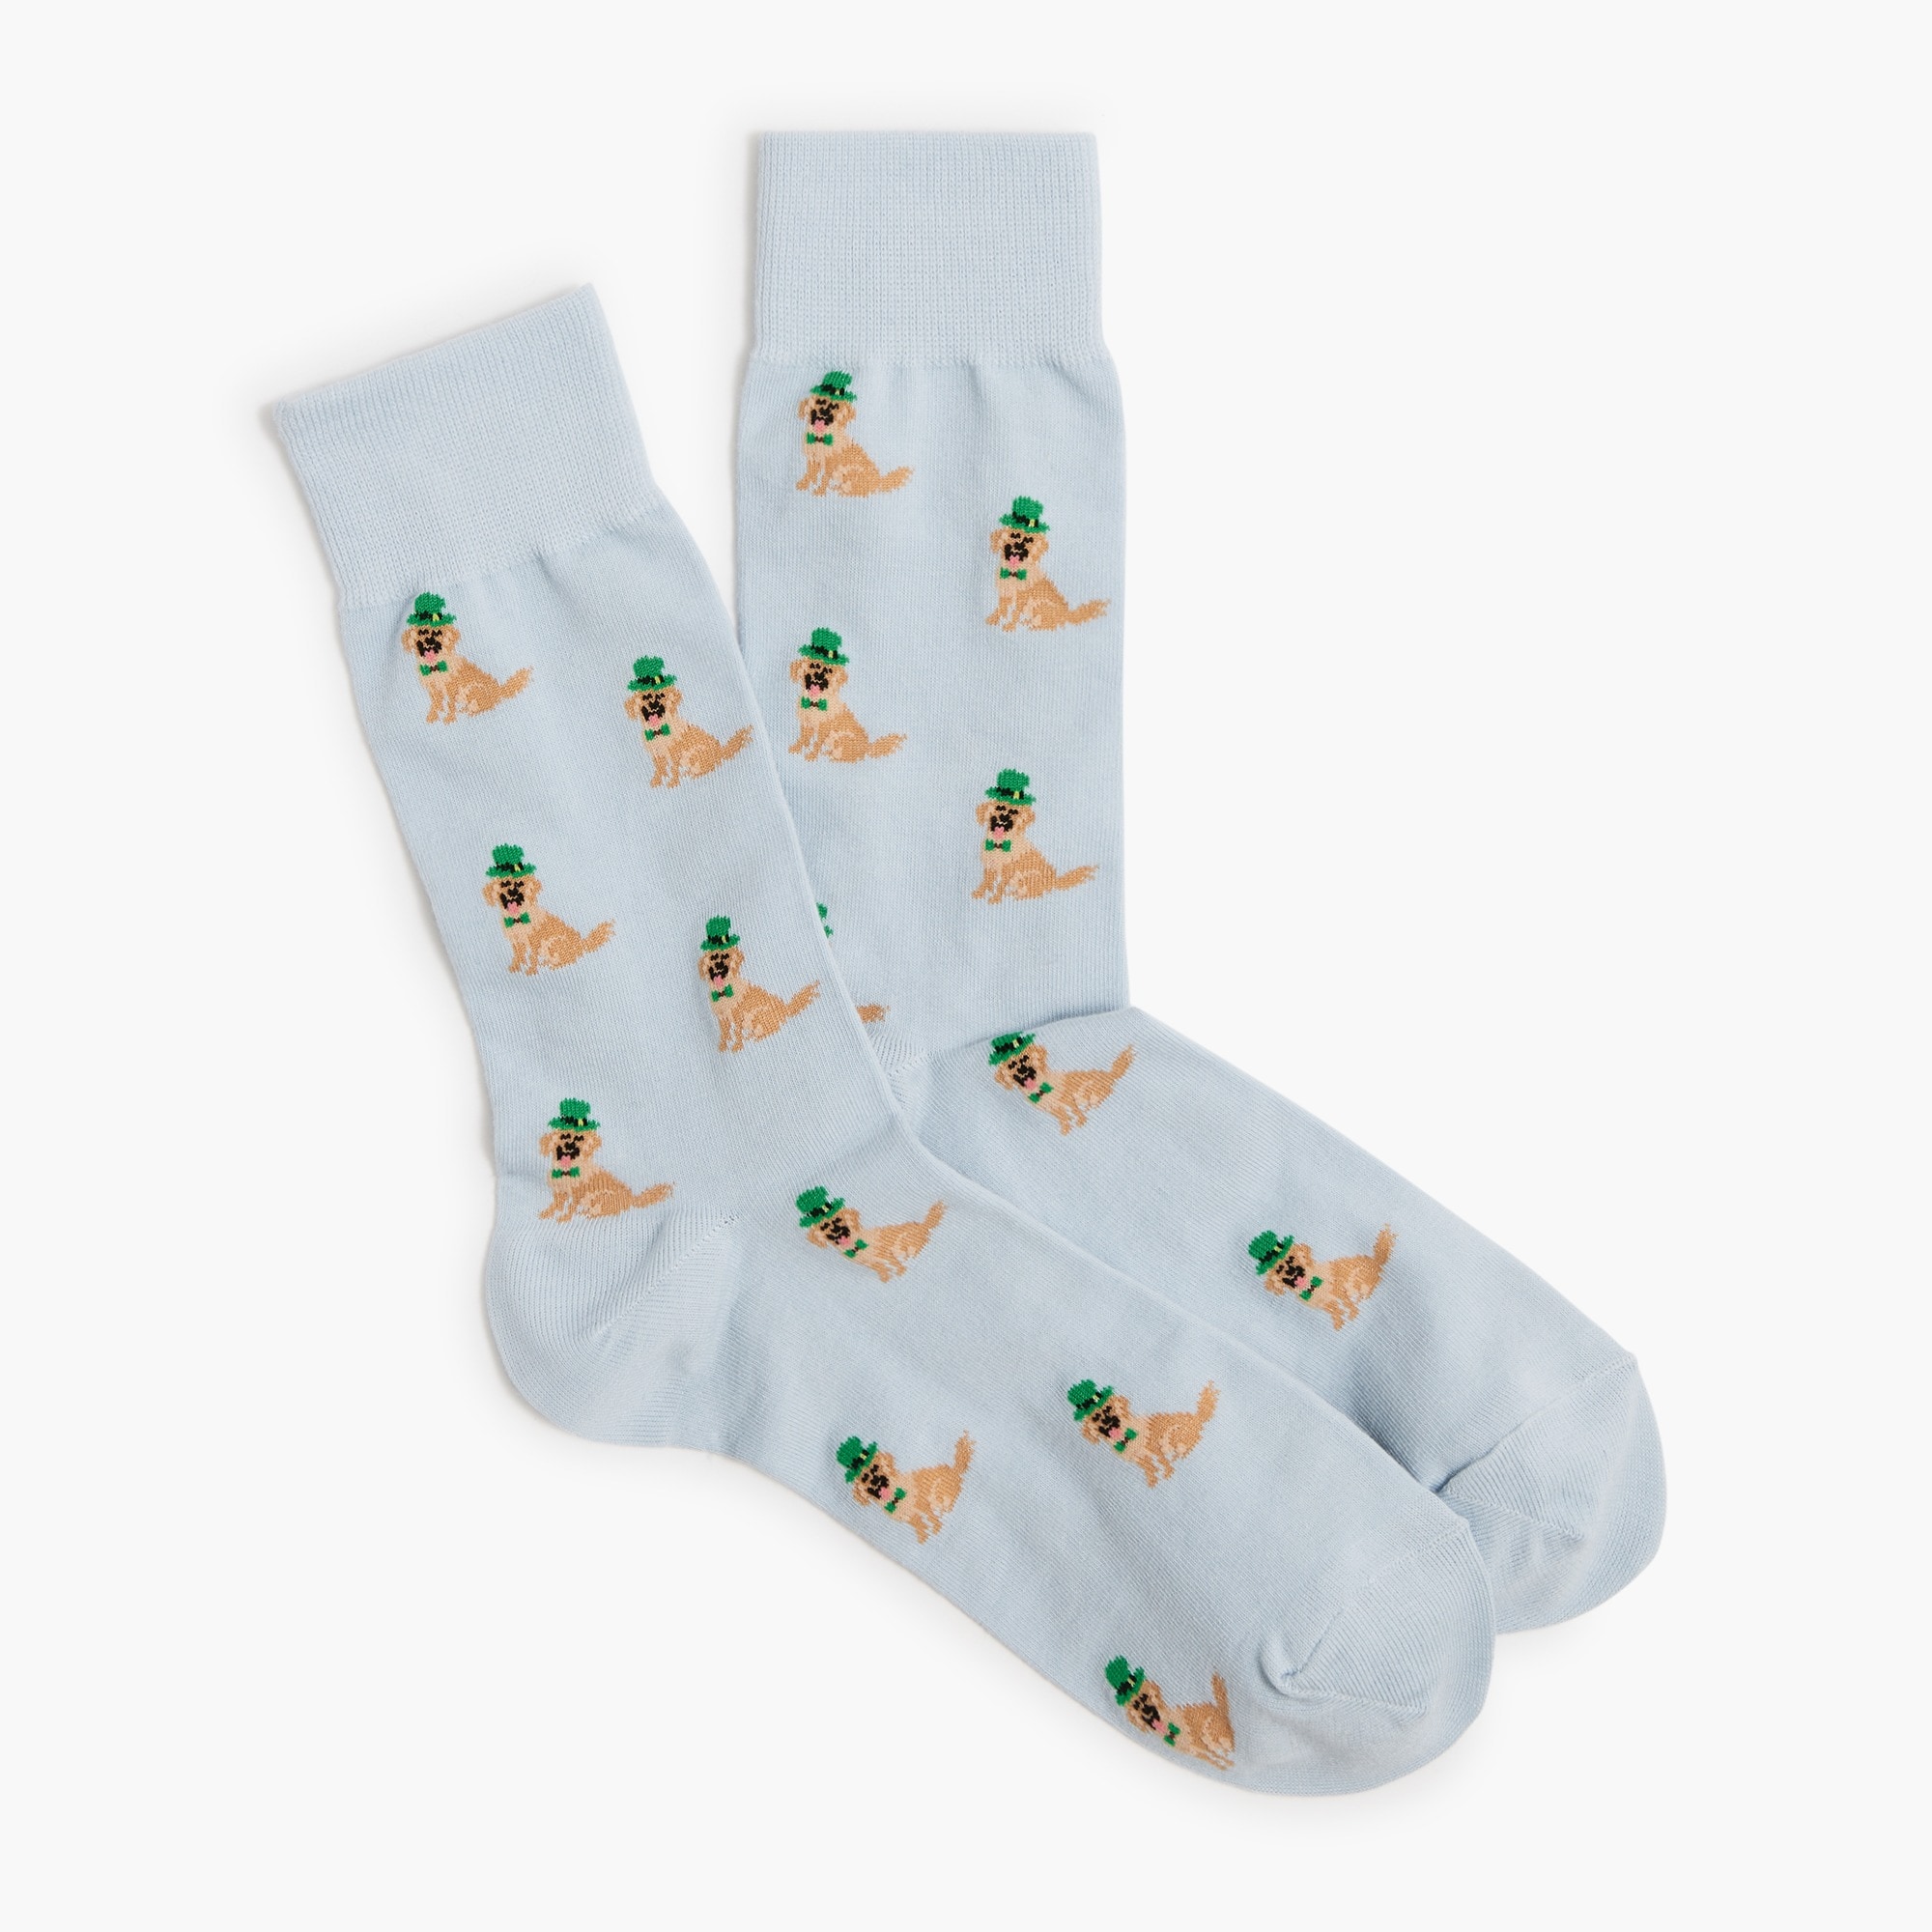 St. Patrick's Day dog socks